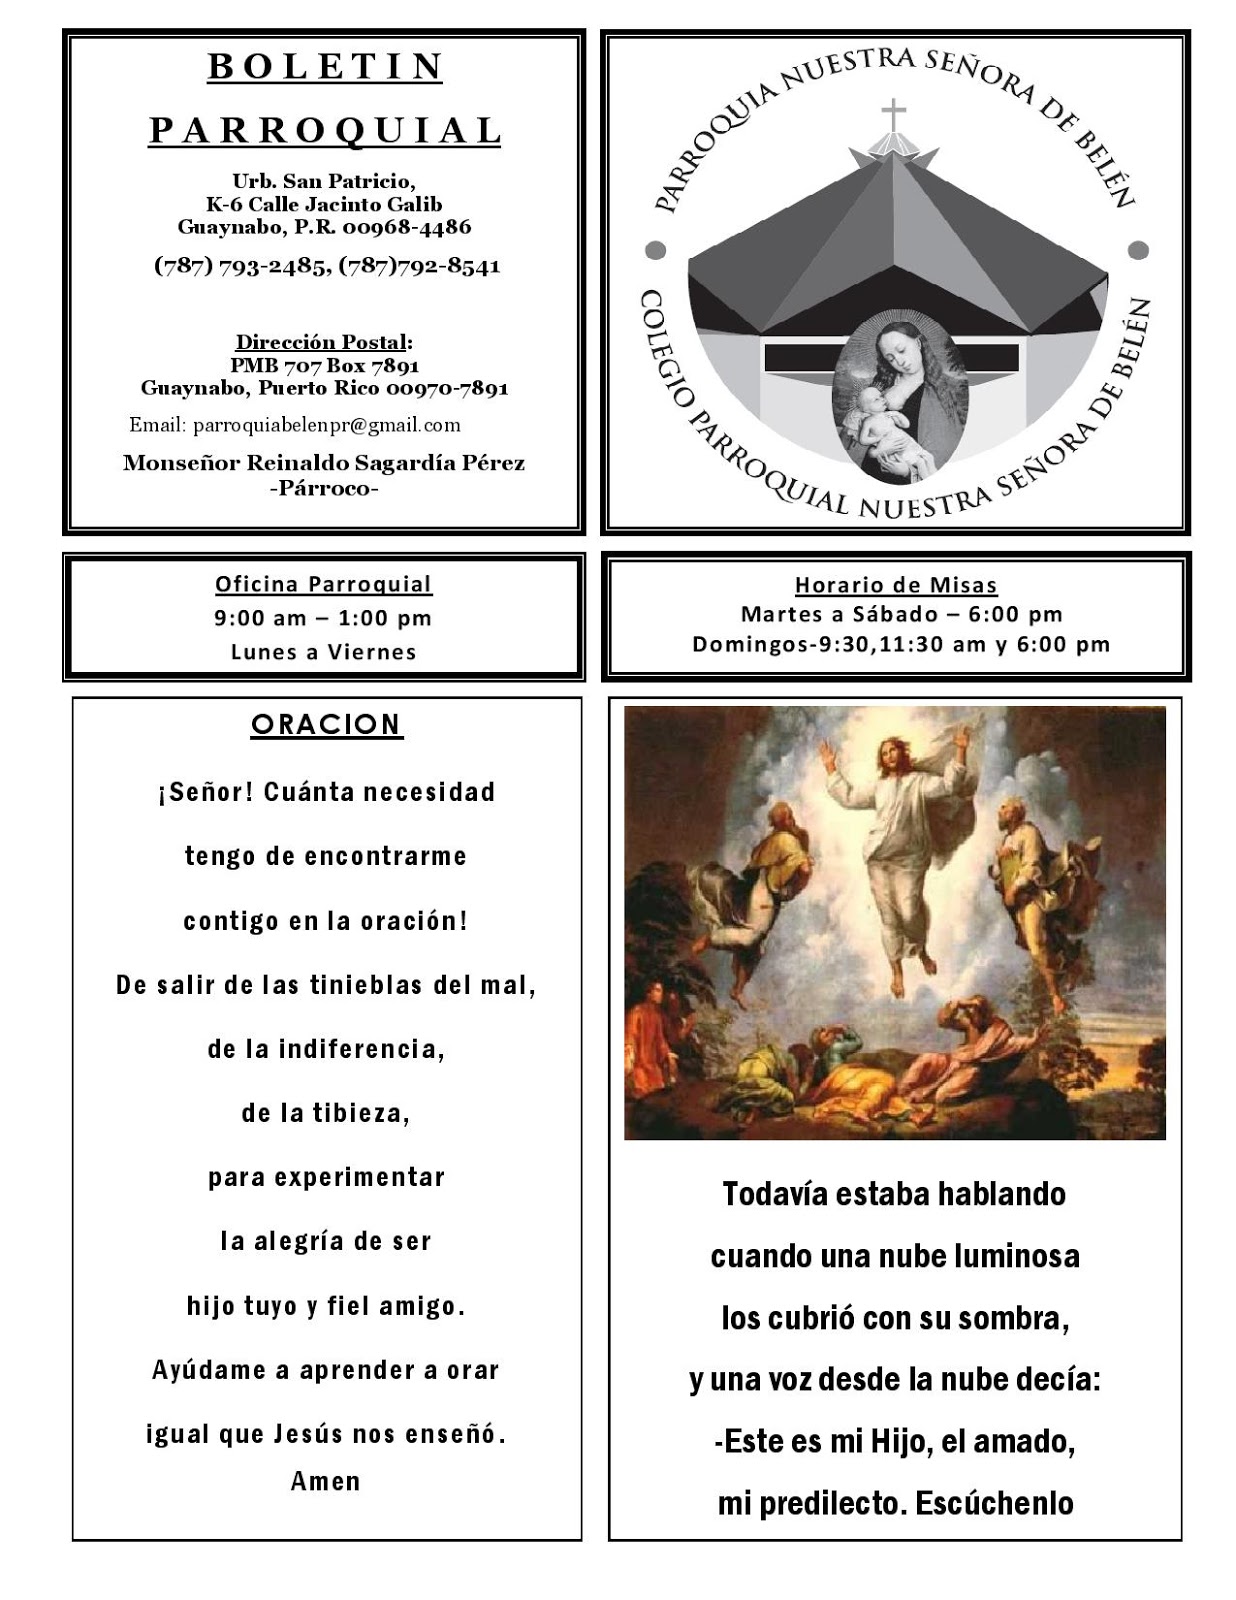 Parroquia Nuestra Señora de Belén: 8 de marzo de 2020 - SEGUNDO DOMINGO